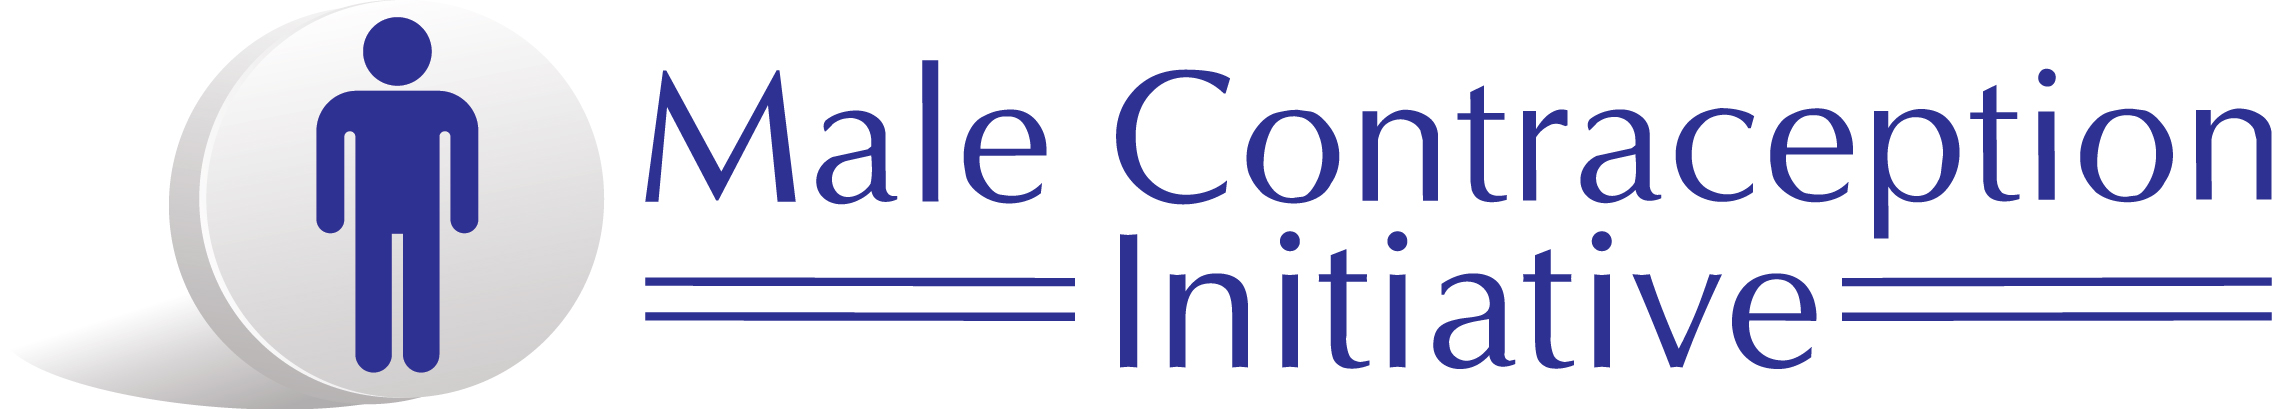 Male Contraception Initiative Logo